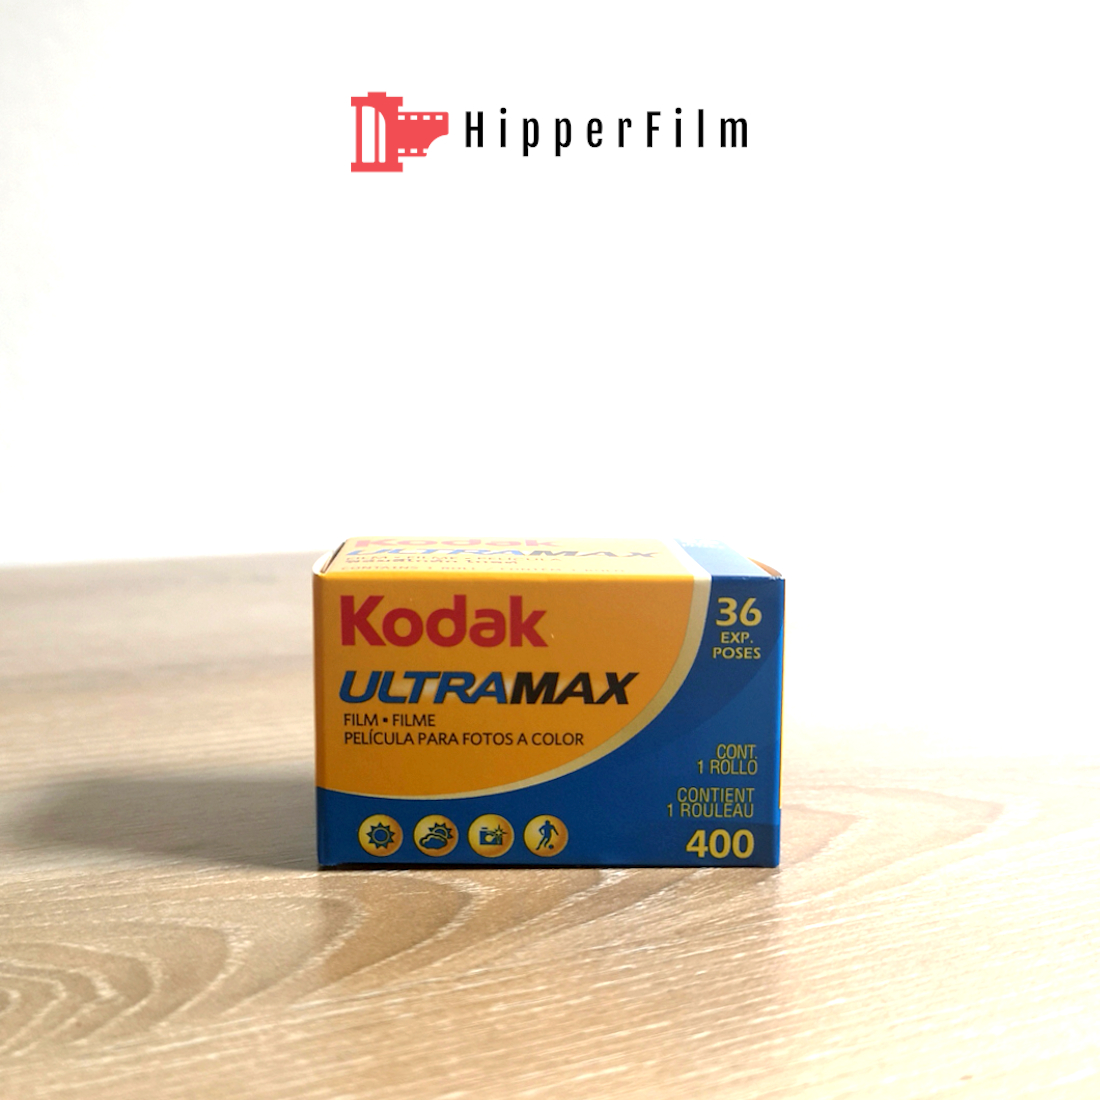 ราคา Kodak Ultramax 400 36 รูป - Allen Cool Gadget